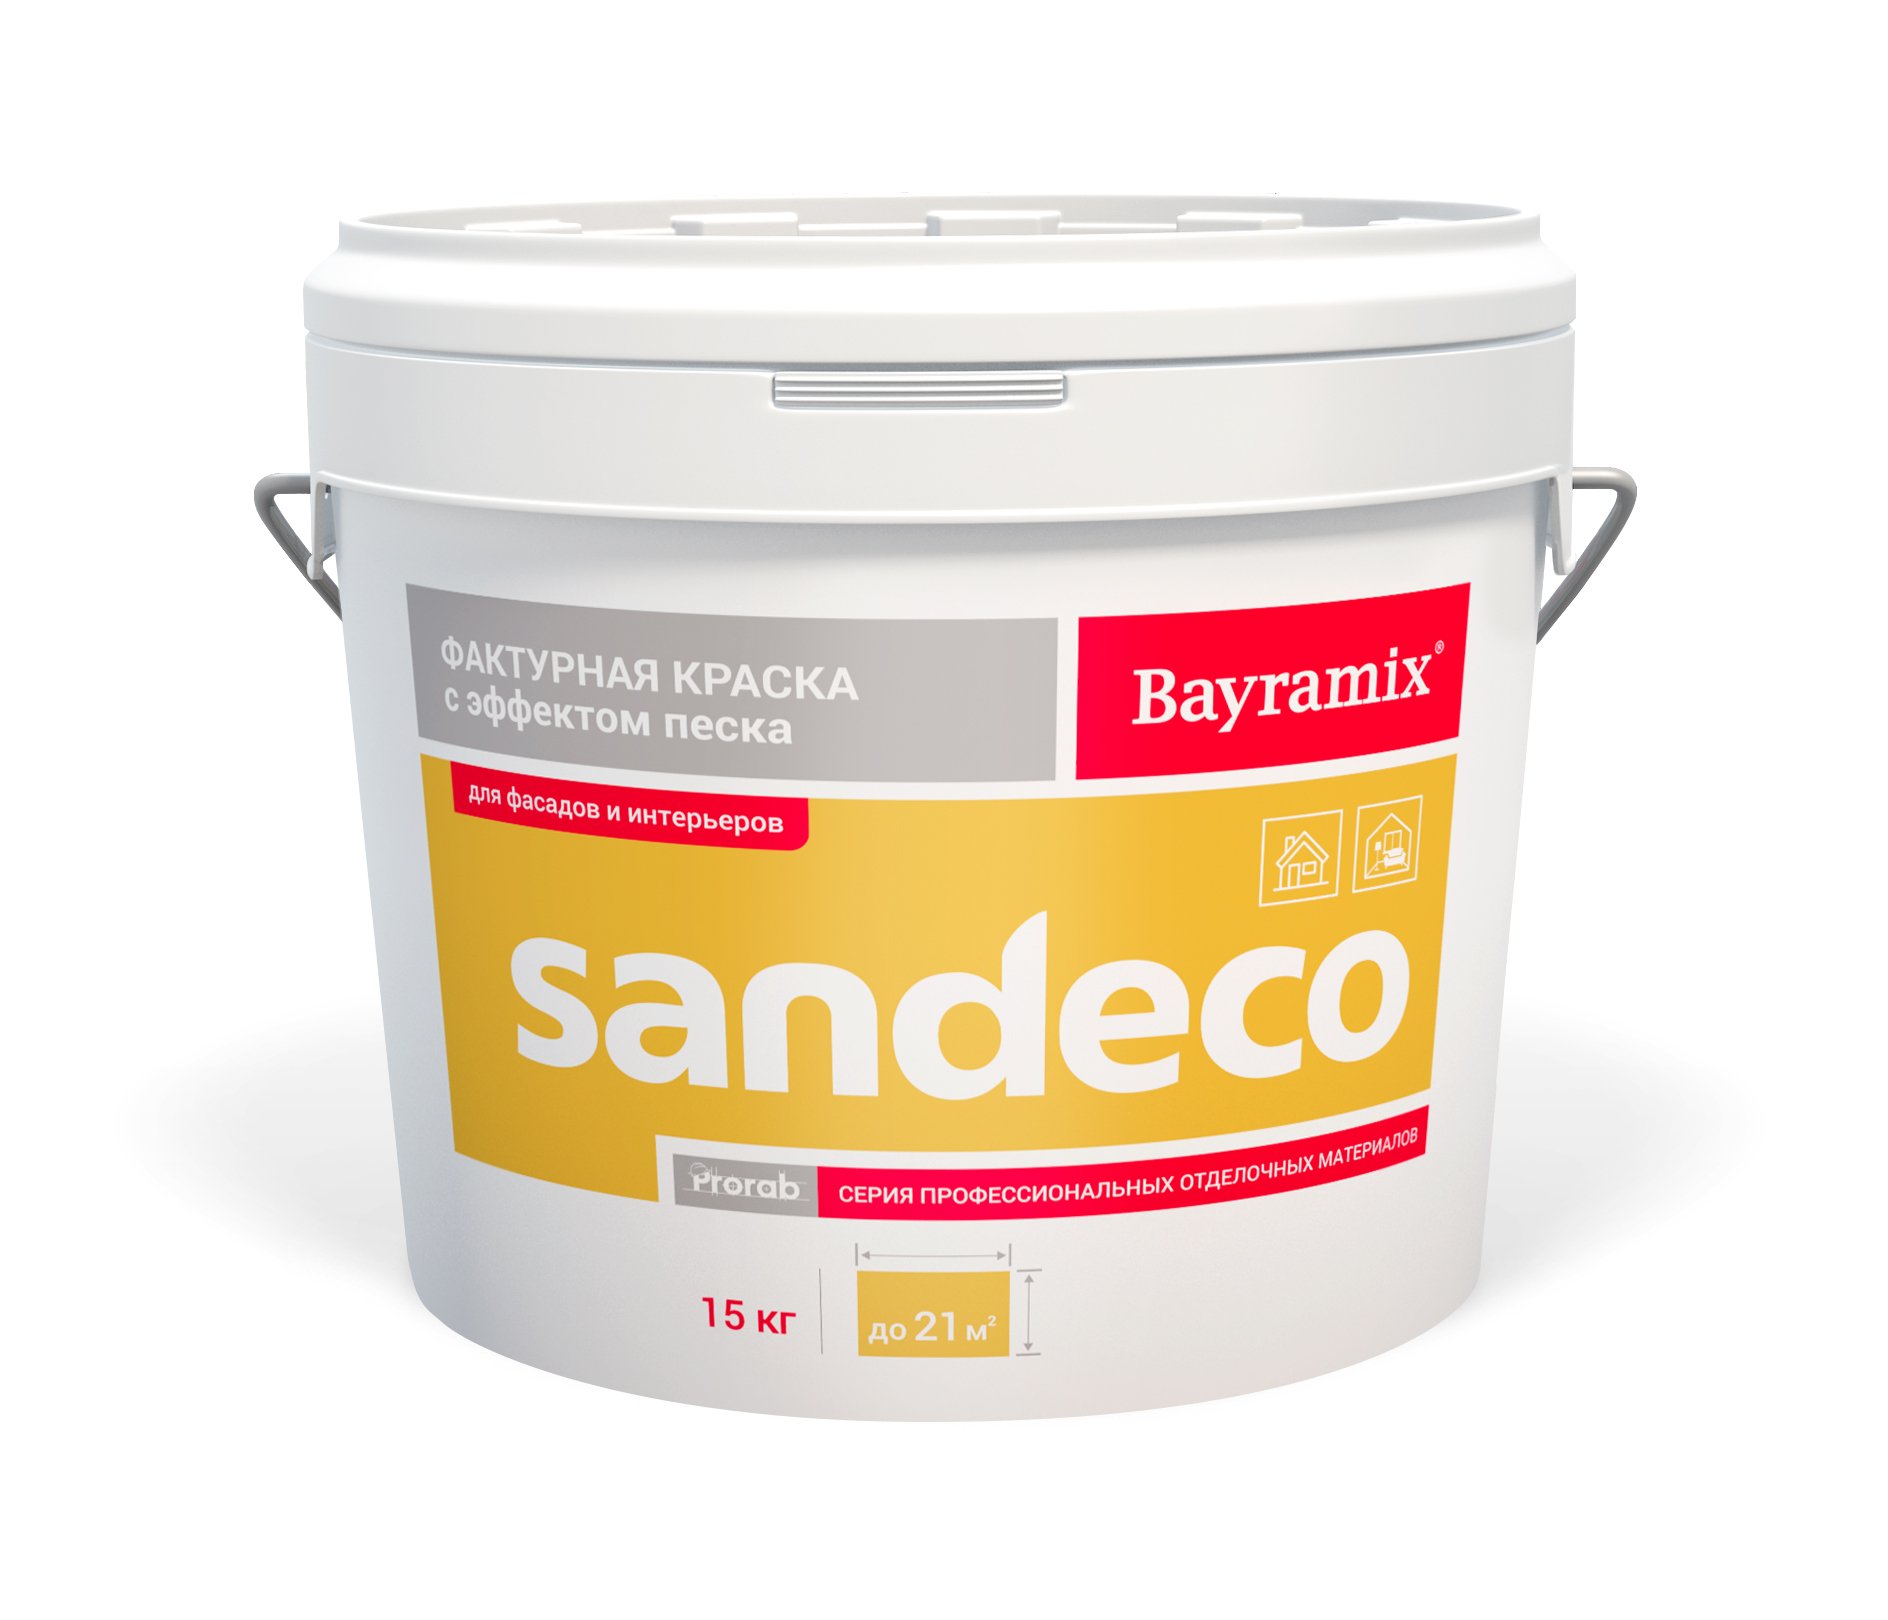 Фактурная краска Bayramix Sandeco для наружных и внутренних работ, 15 кг фактурная морозоустойчивая краска white house